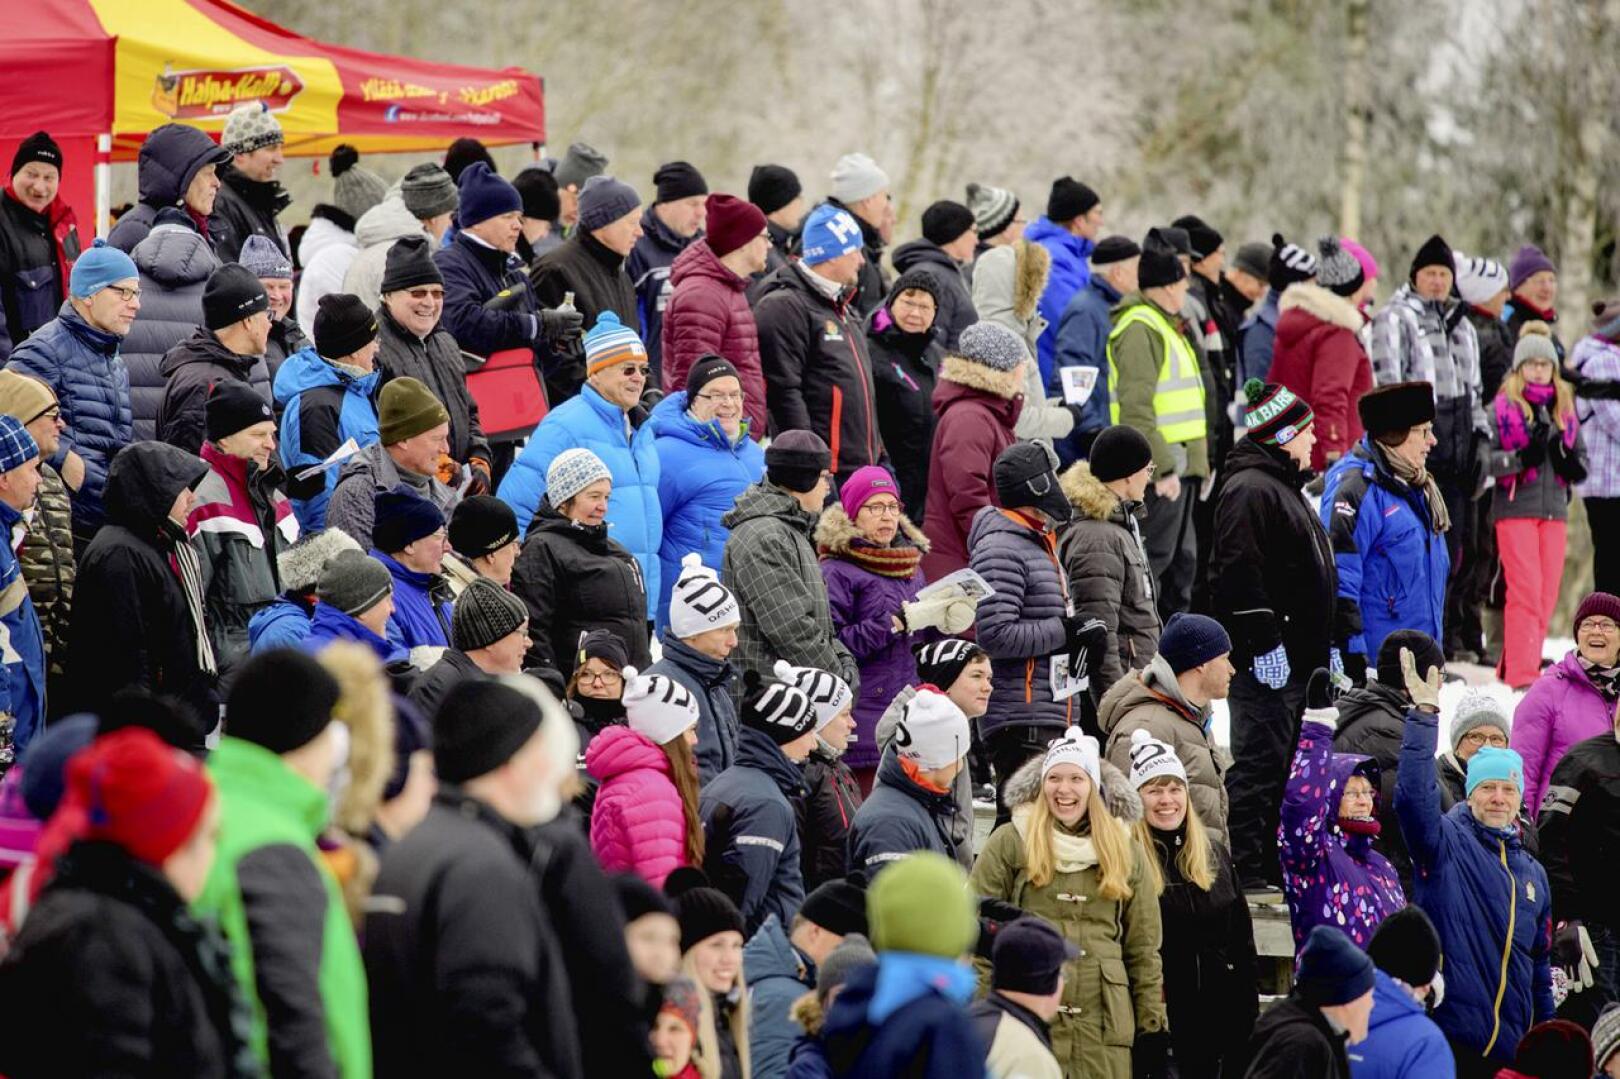 Yleisötapahtumat ovat Pohjois-Pohjanmaalla kiellettyjä 18. tammikuuta saakka. Hiihdon maakuntaviesti on suuri yleisötapahtuma, joka piti hiihtää loppiaisena Sievissä. Järjestäjät päättivät keskiviikkona siirtää kisat maaliskuulle.